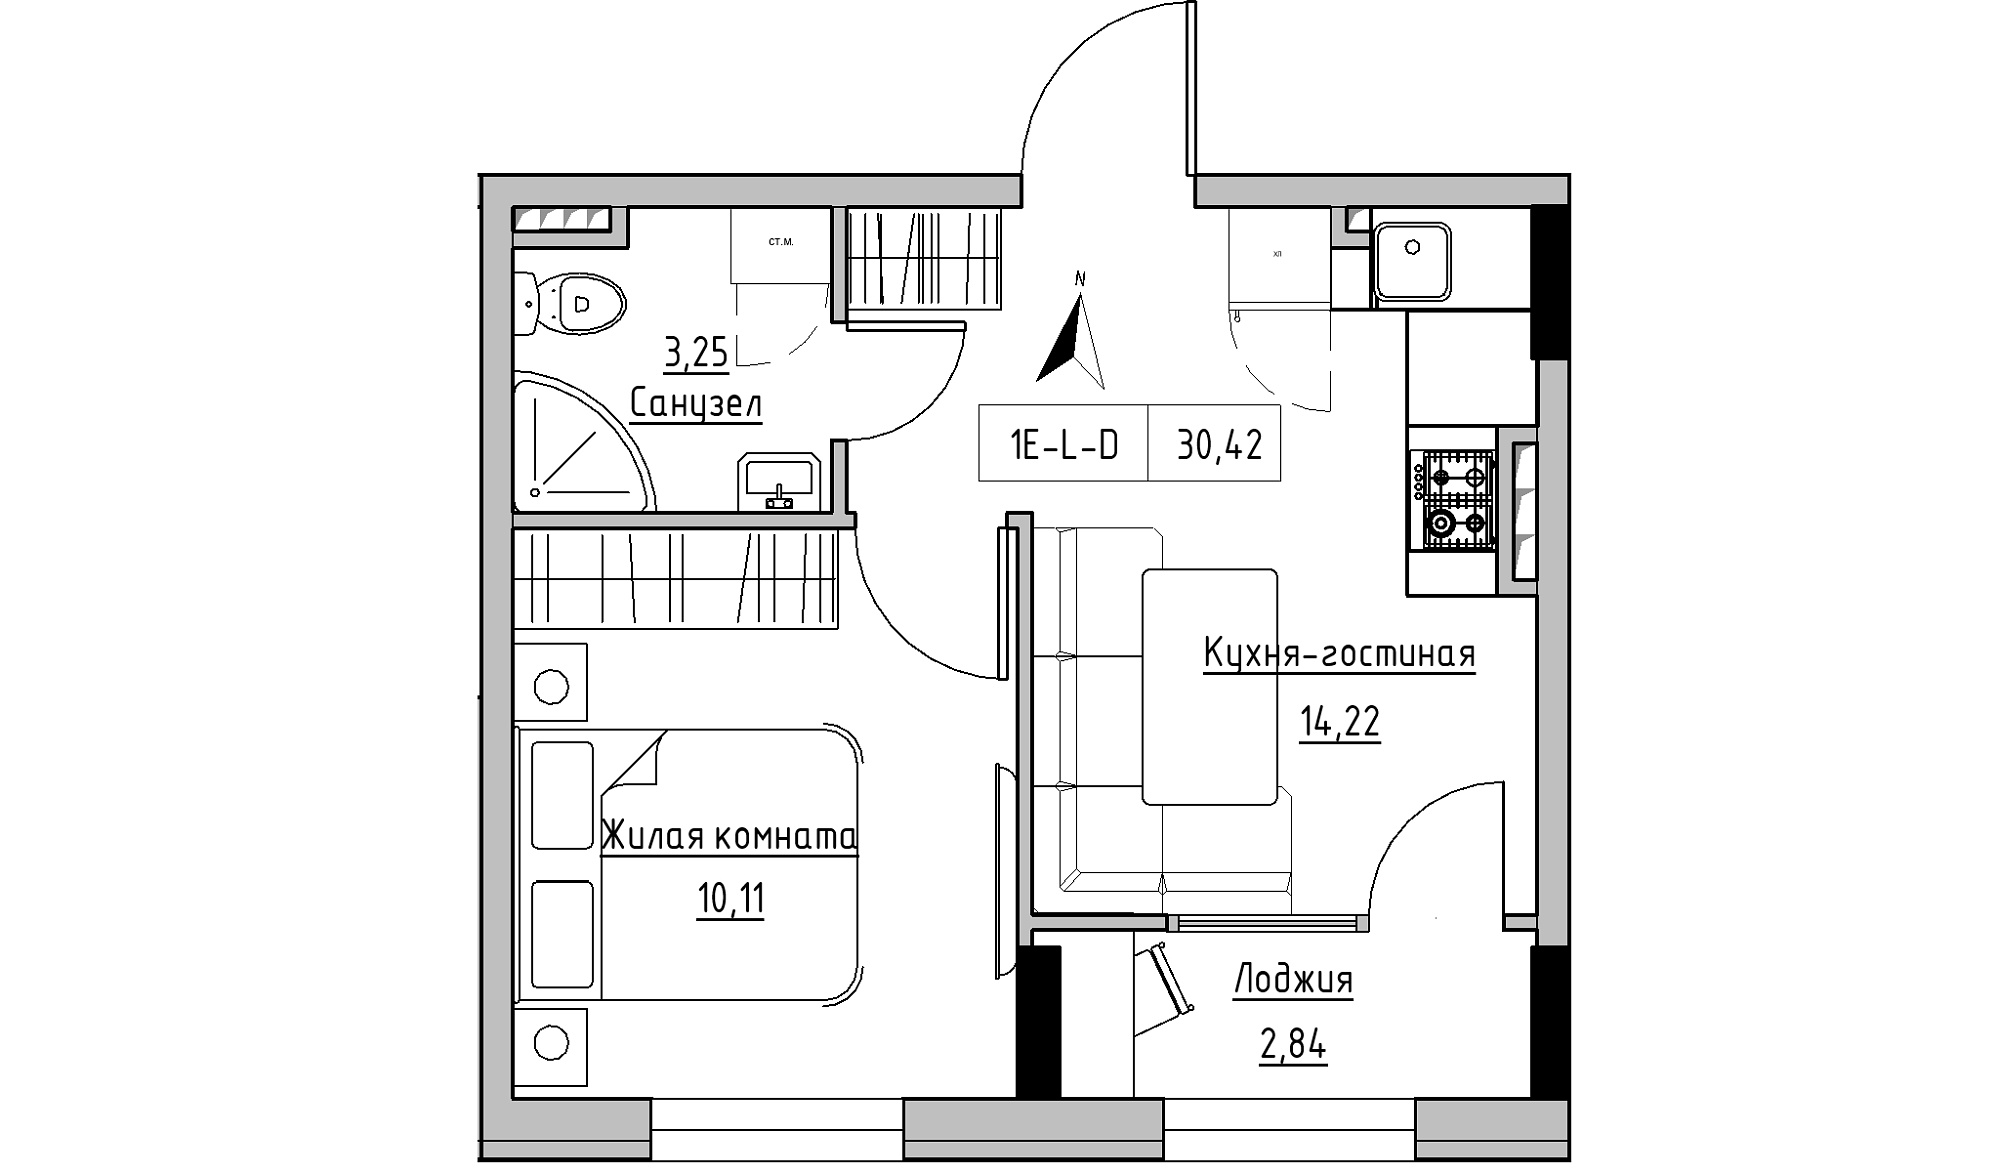 Планування 1-к квартира площею 30.42м2, KS-025-03/0013.